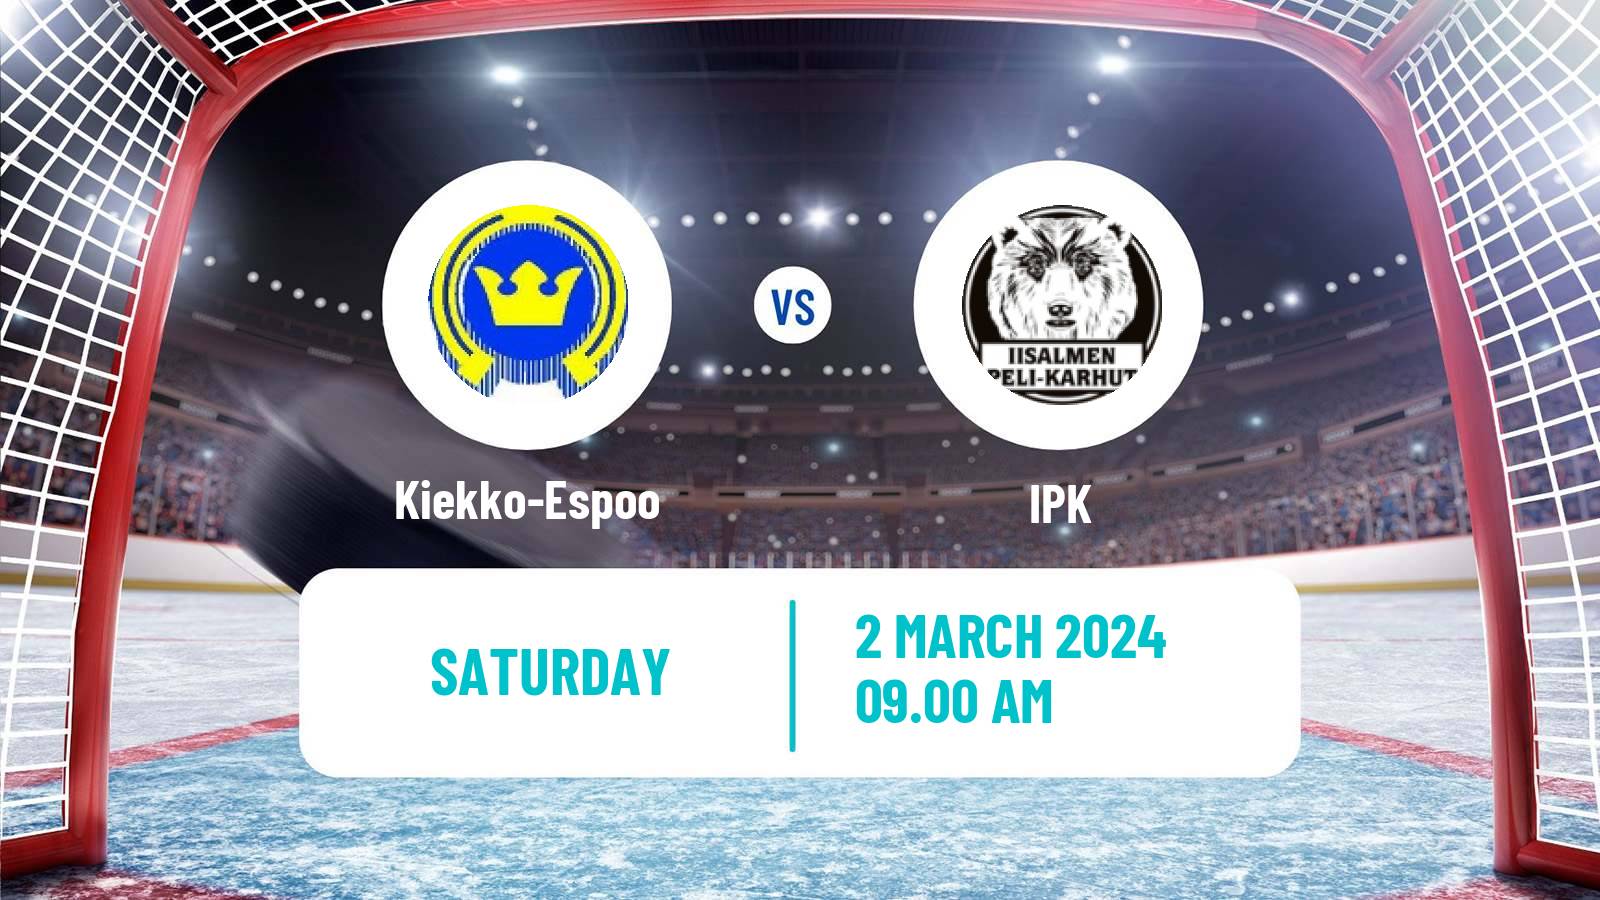 Hockey Finnish Mestis Kiekko-Espoo - IPK